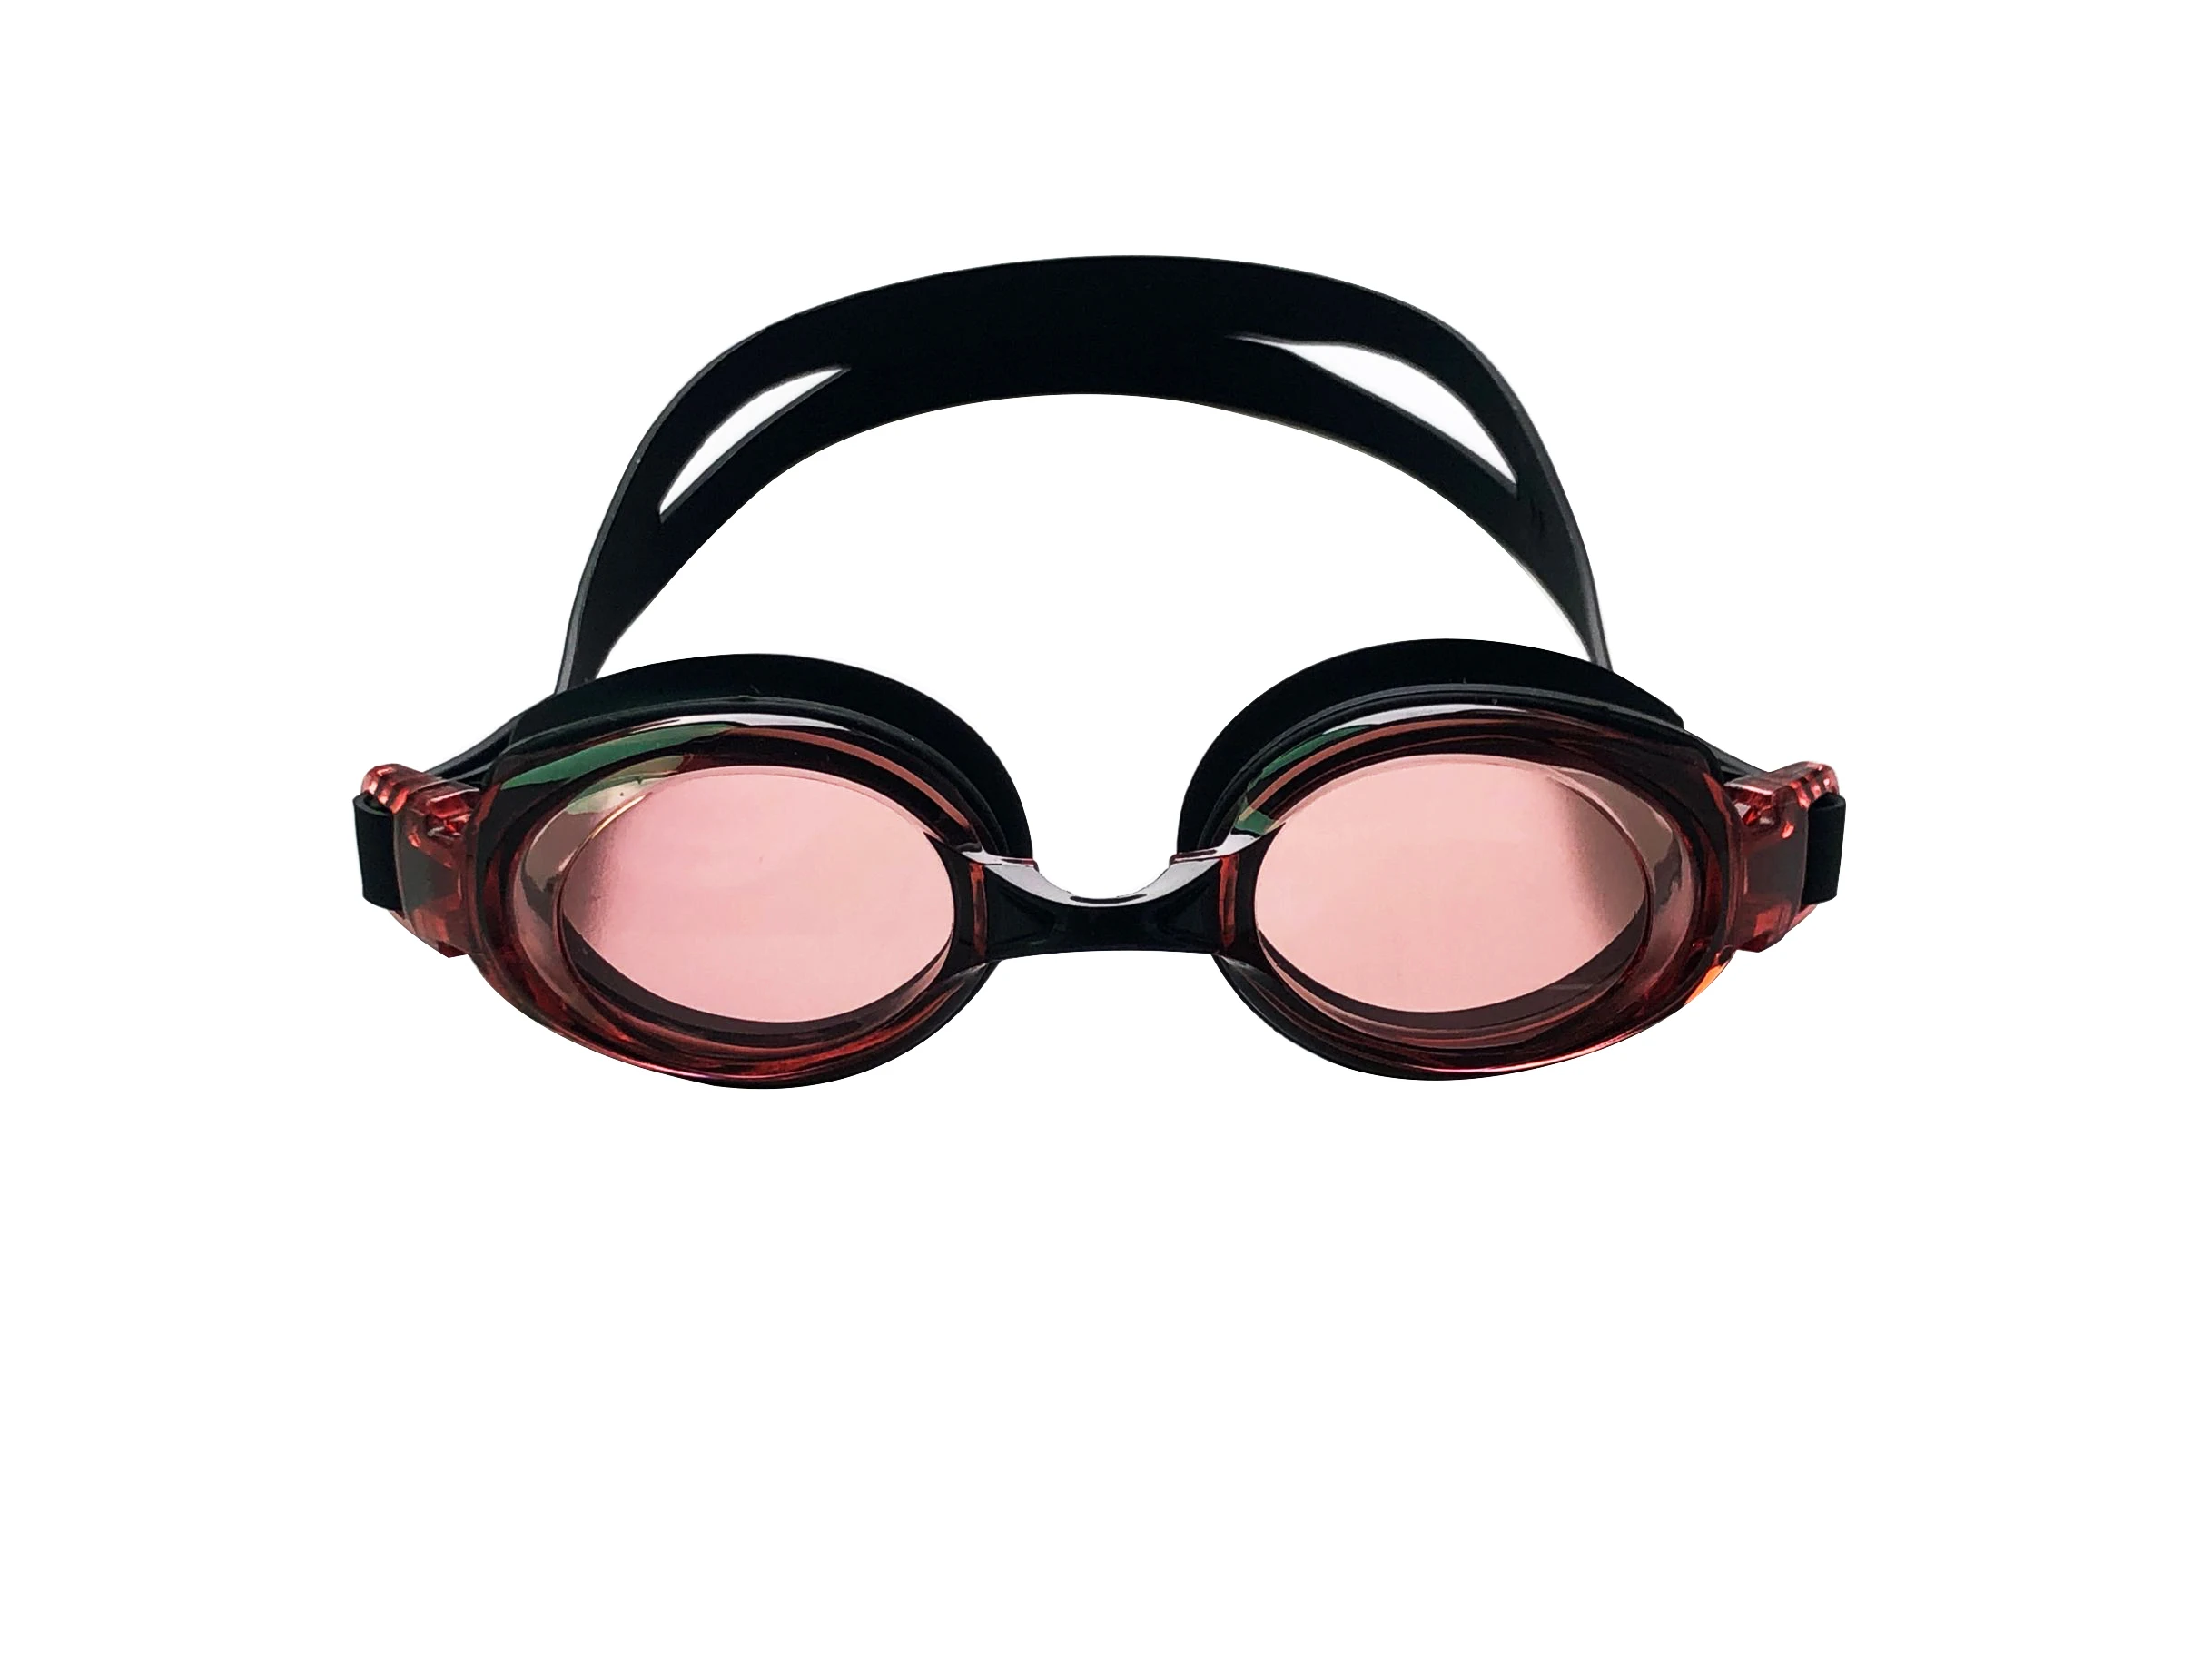 Профессиональные 3 в 1 плавательные очки, противотуманные очки для бассейна, унисекс, регулируемые очки, водонепроницаемые противотуманные очки